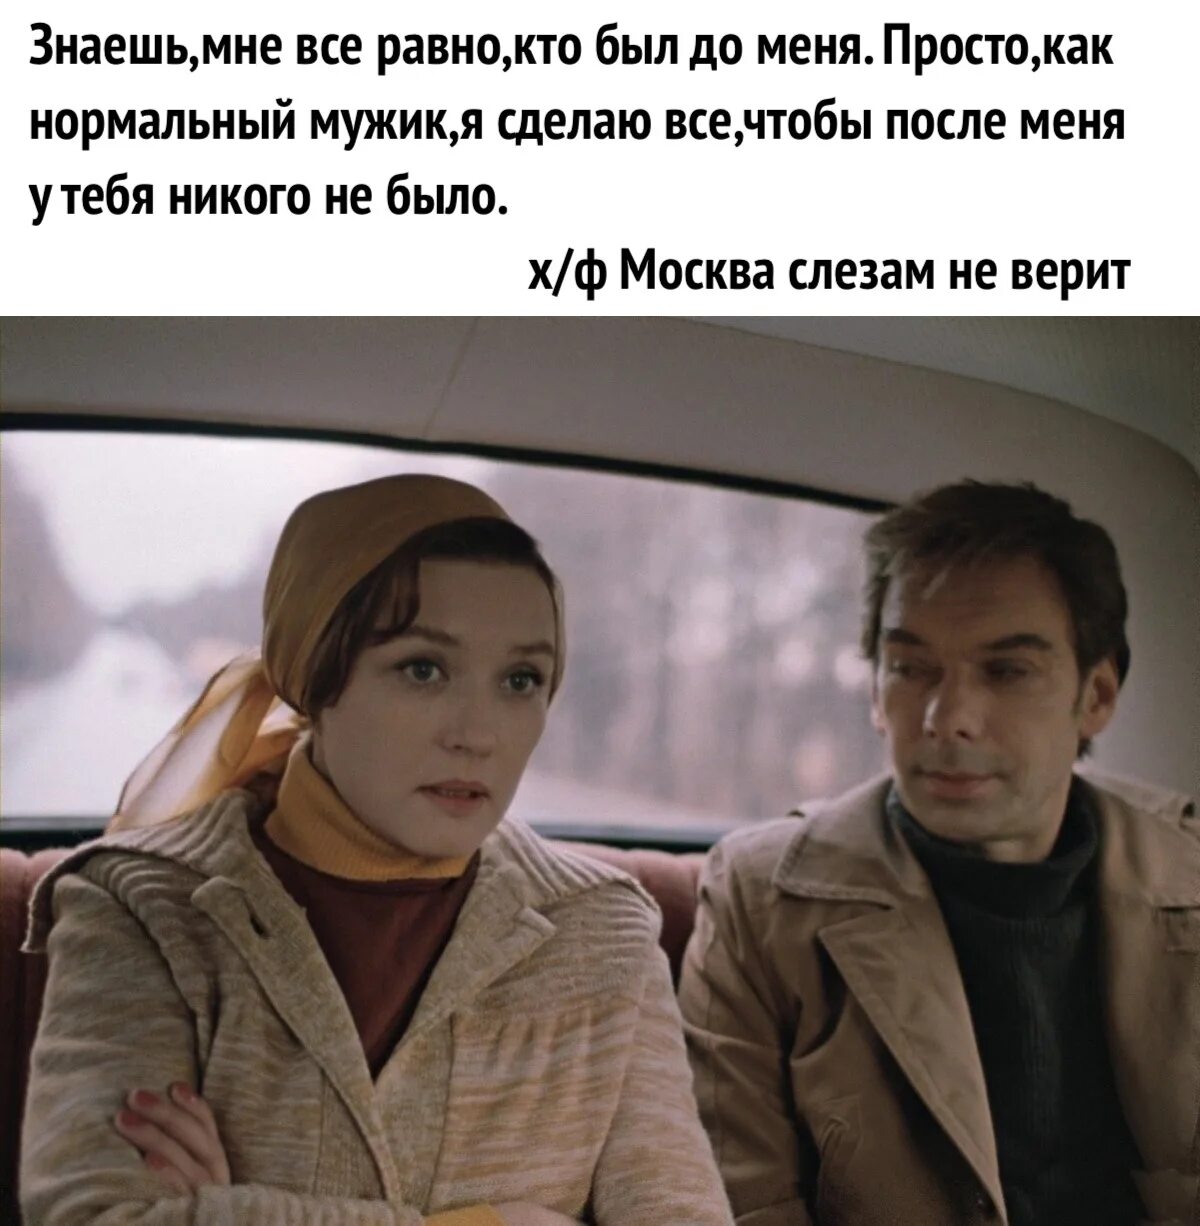 Жена все решает сама. Цитаты из кинофильма Москва слезам не верит. Цитаты из Москва слезам не верит.